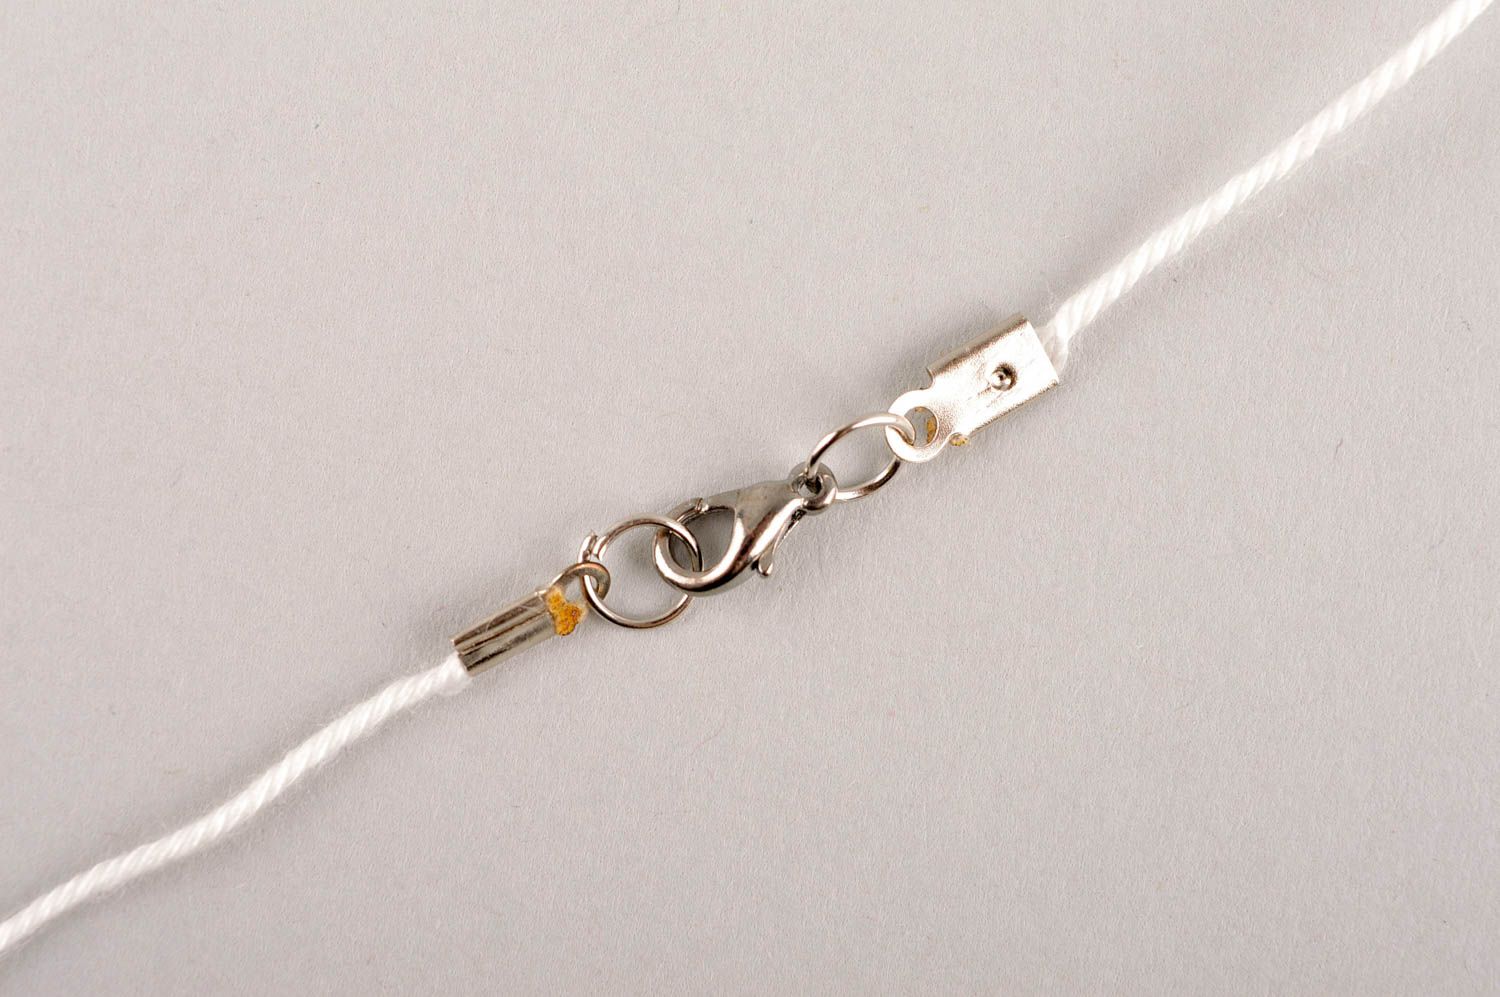 Handmade pendant designer pendant unusual gift for girl handmade glass pendant photo 5